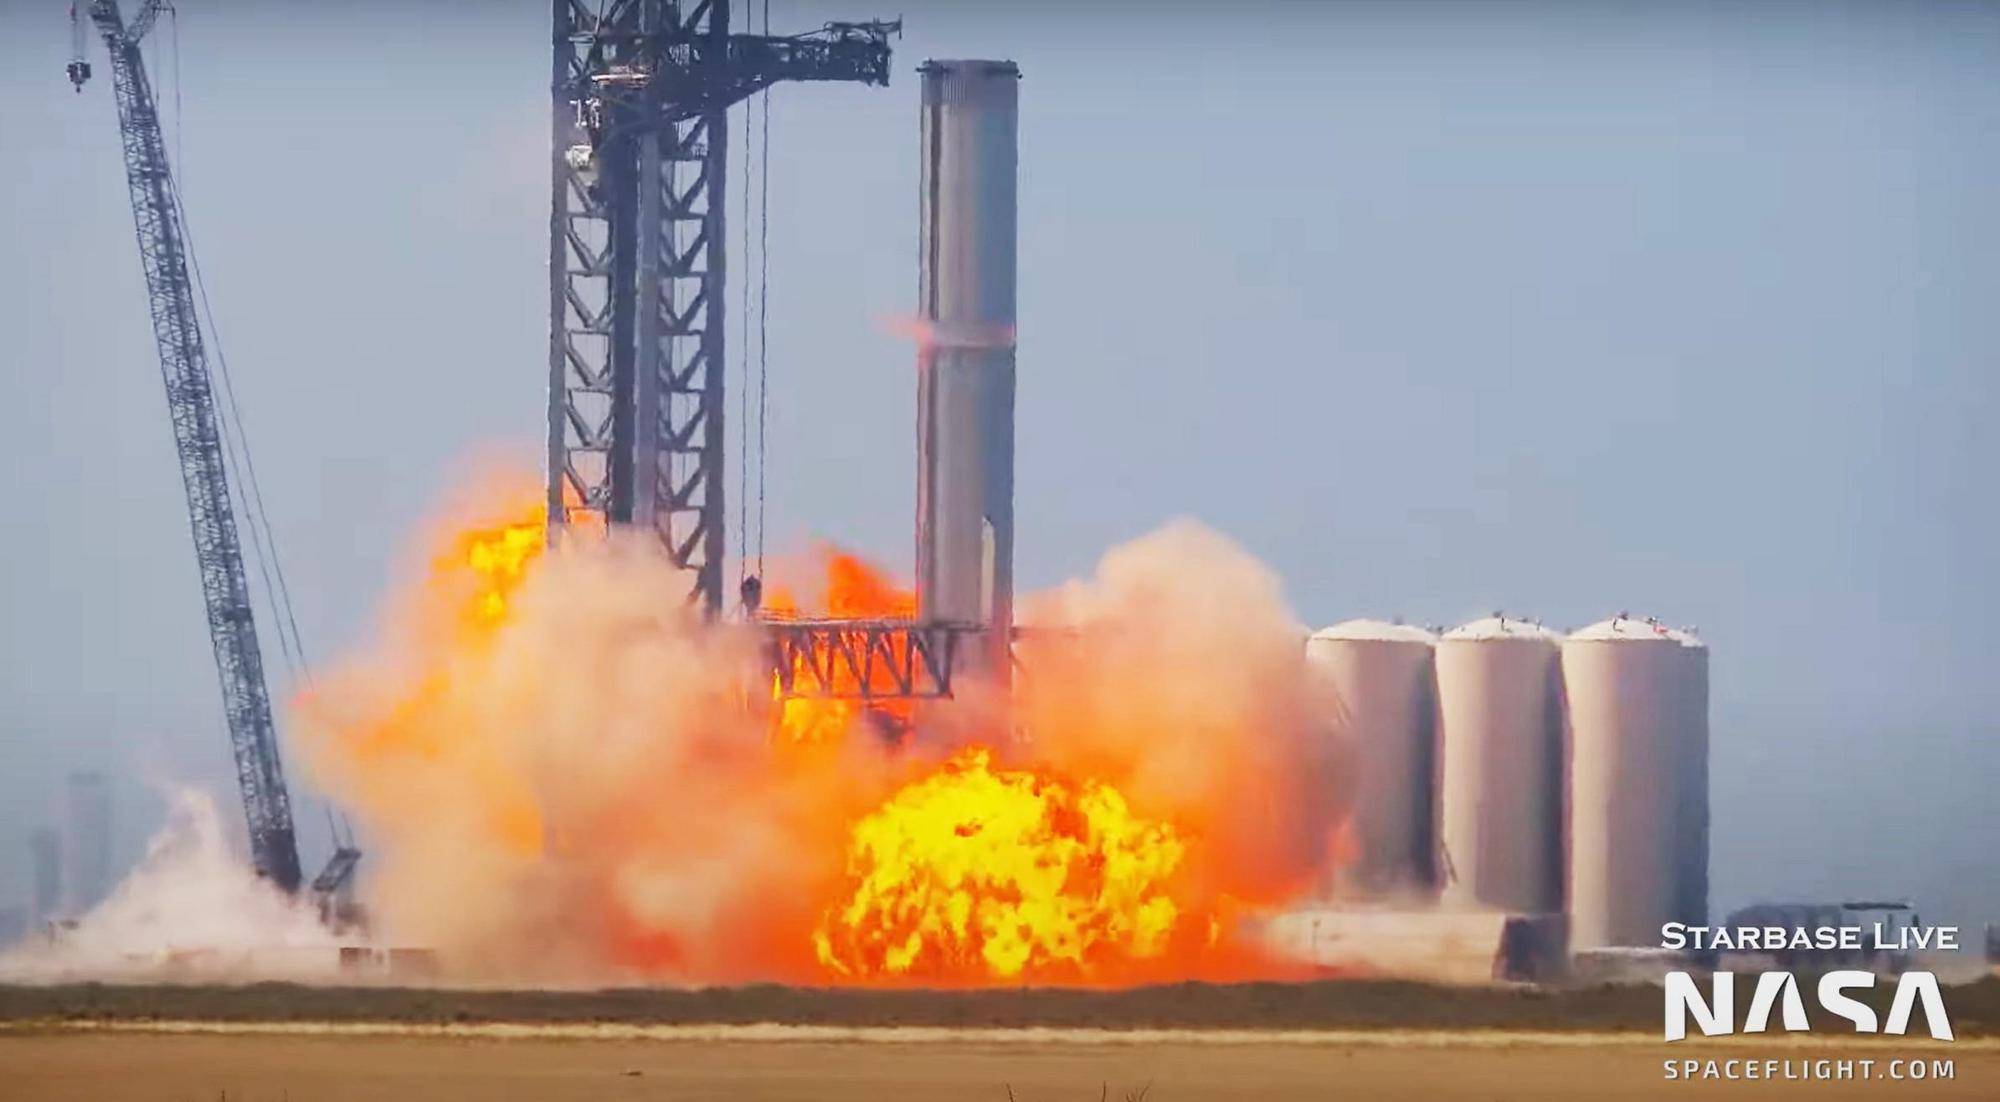 Tên lửa của SpaceX phát nổ trên bệ phóng: Tham vọng của tỷ phú Elon Musk có bị ảnh hưởng? - Ảnh 1.